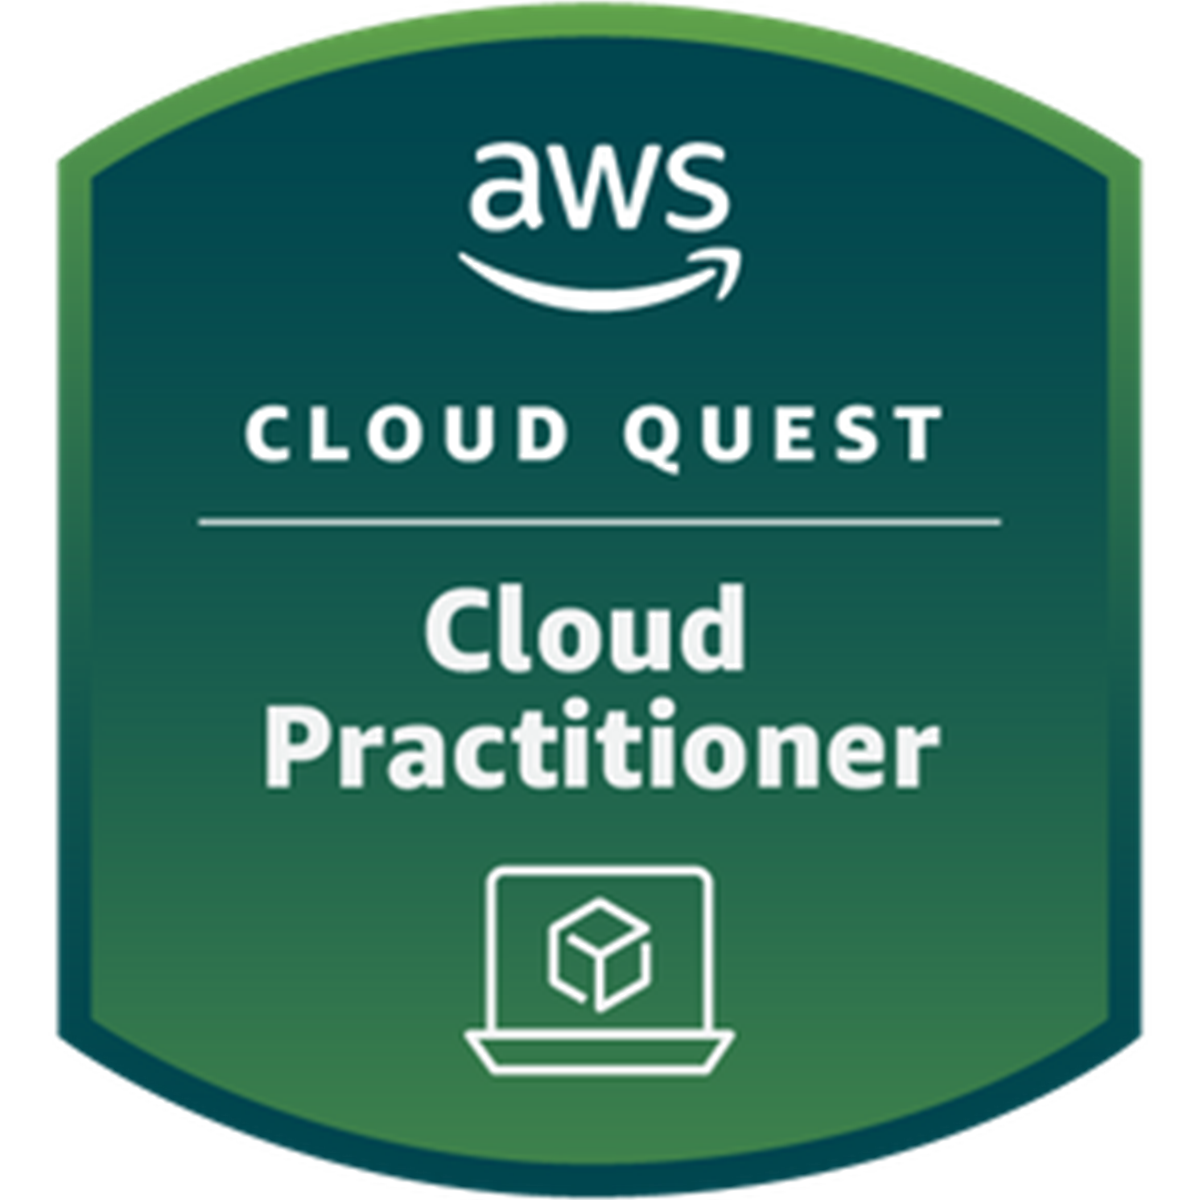 CludQuest-CloudPratictioner.png